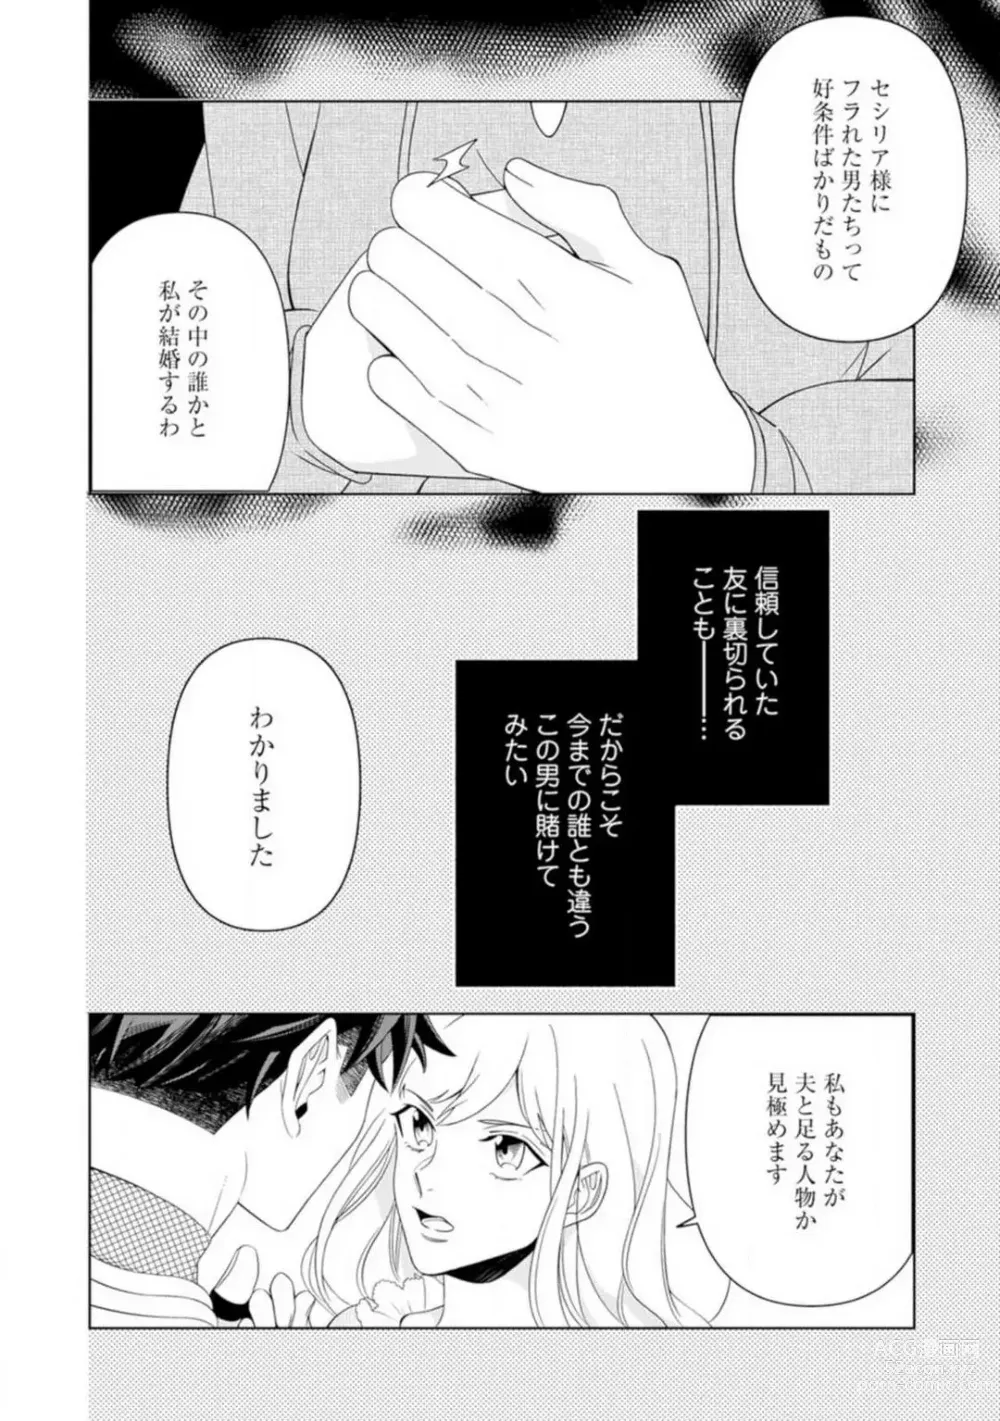 Page 9 of manga Shakunetsu no Ou no Inai ~Atsui Yubi ni Tokasarete~ 1-6